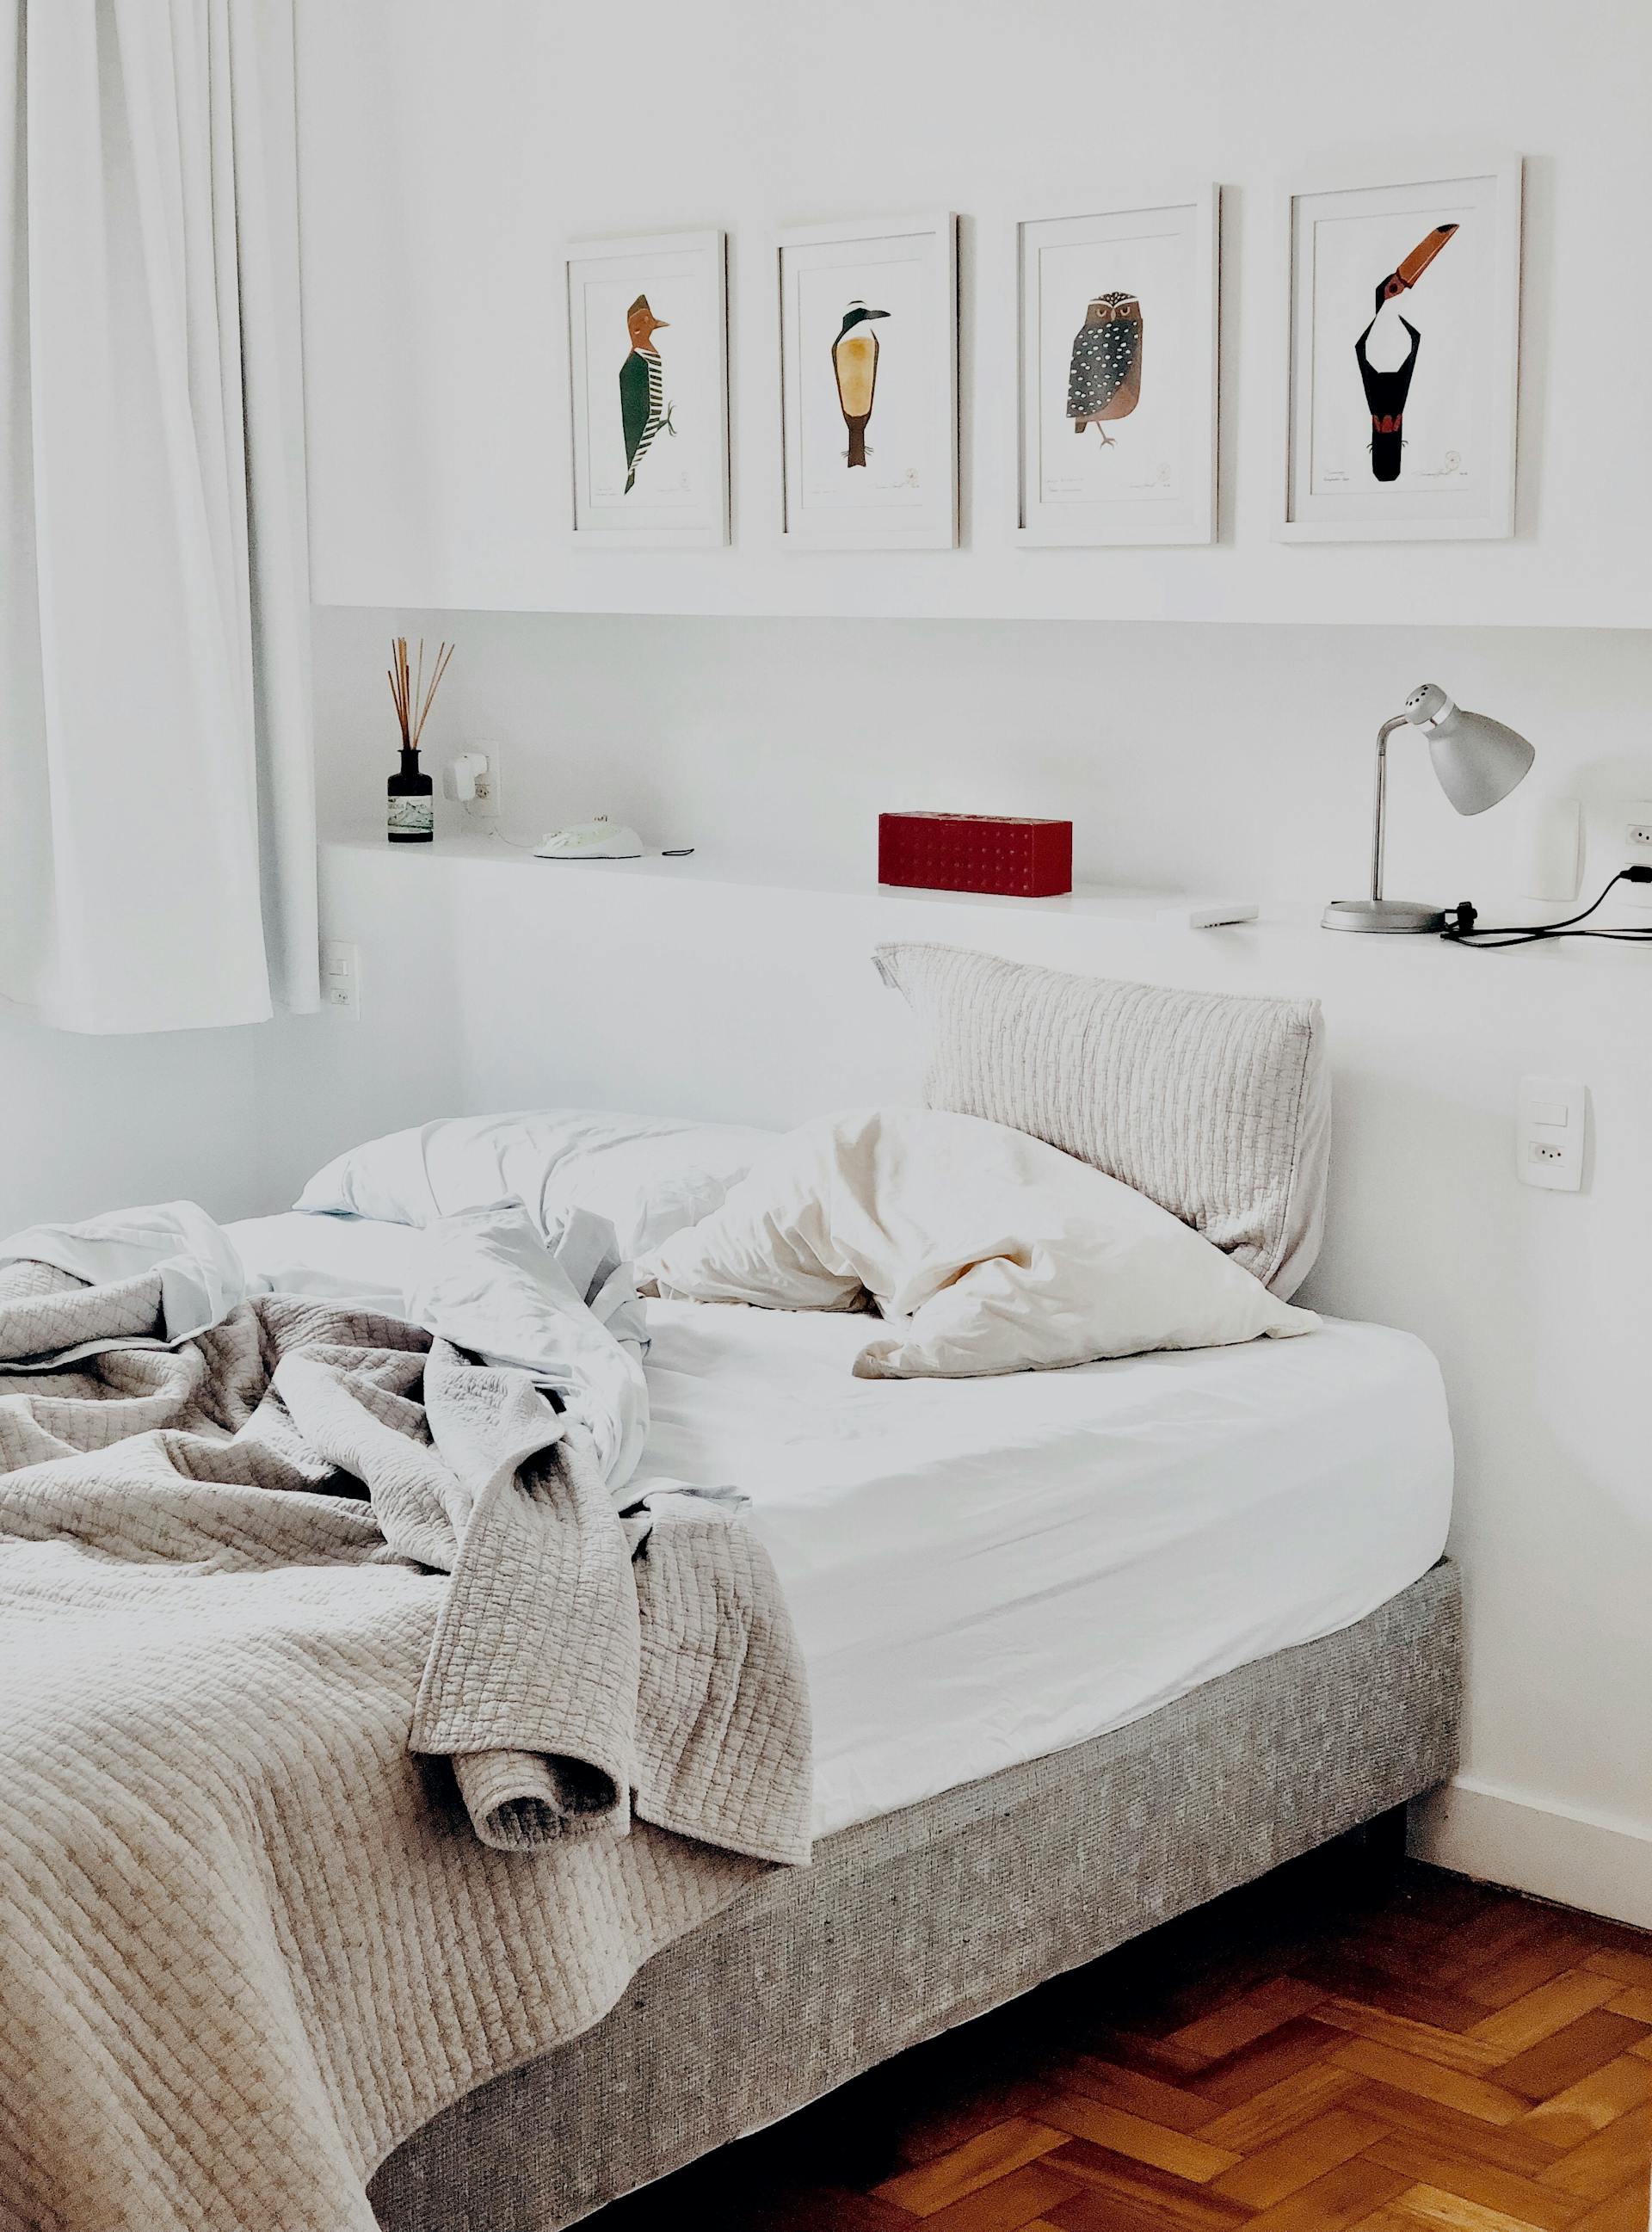 Un lit défait | Source : Pexels